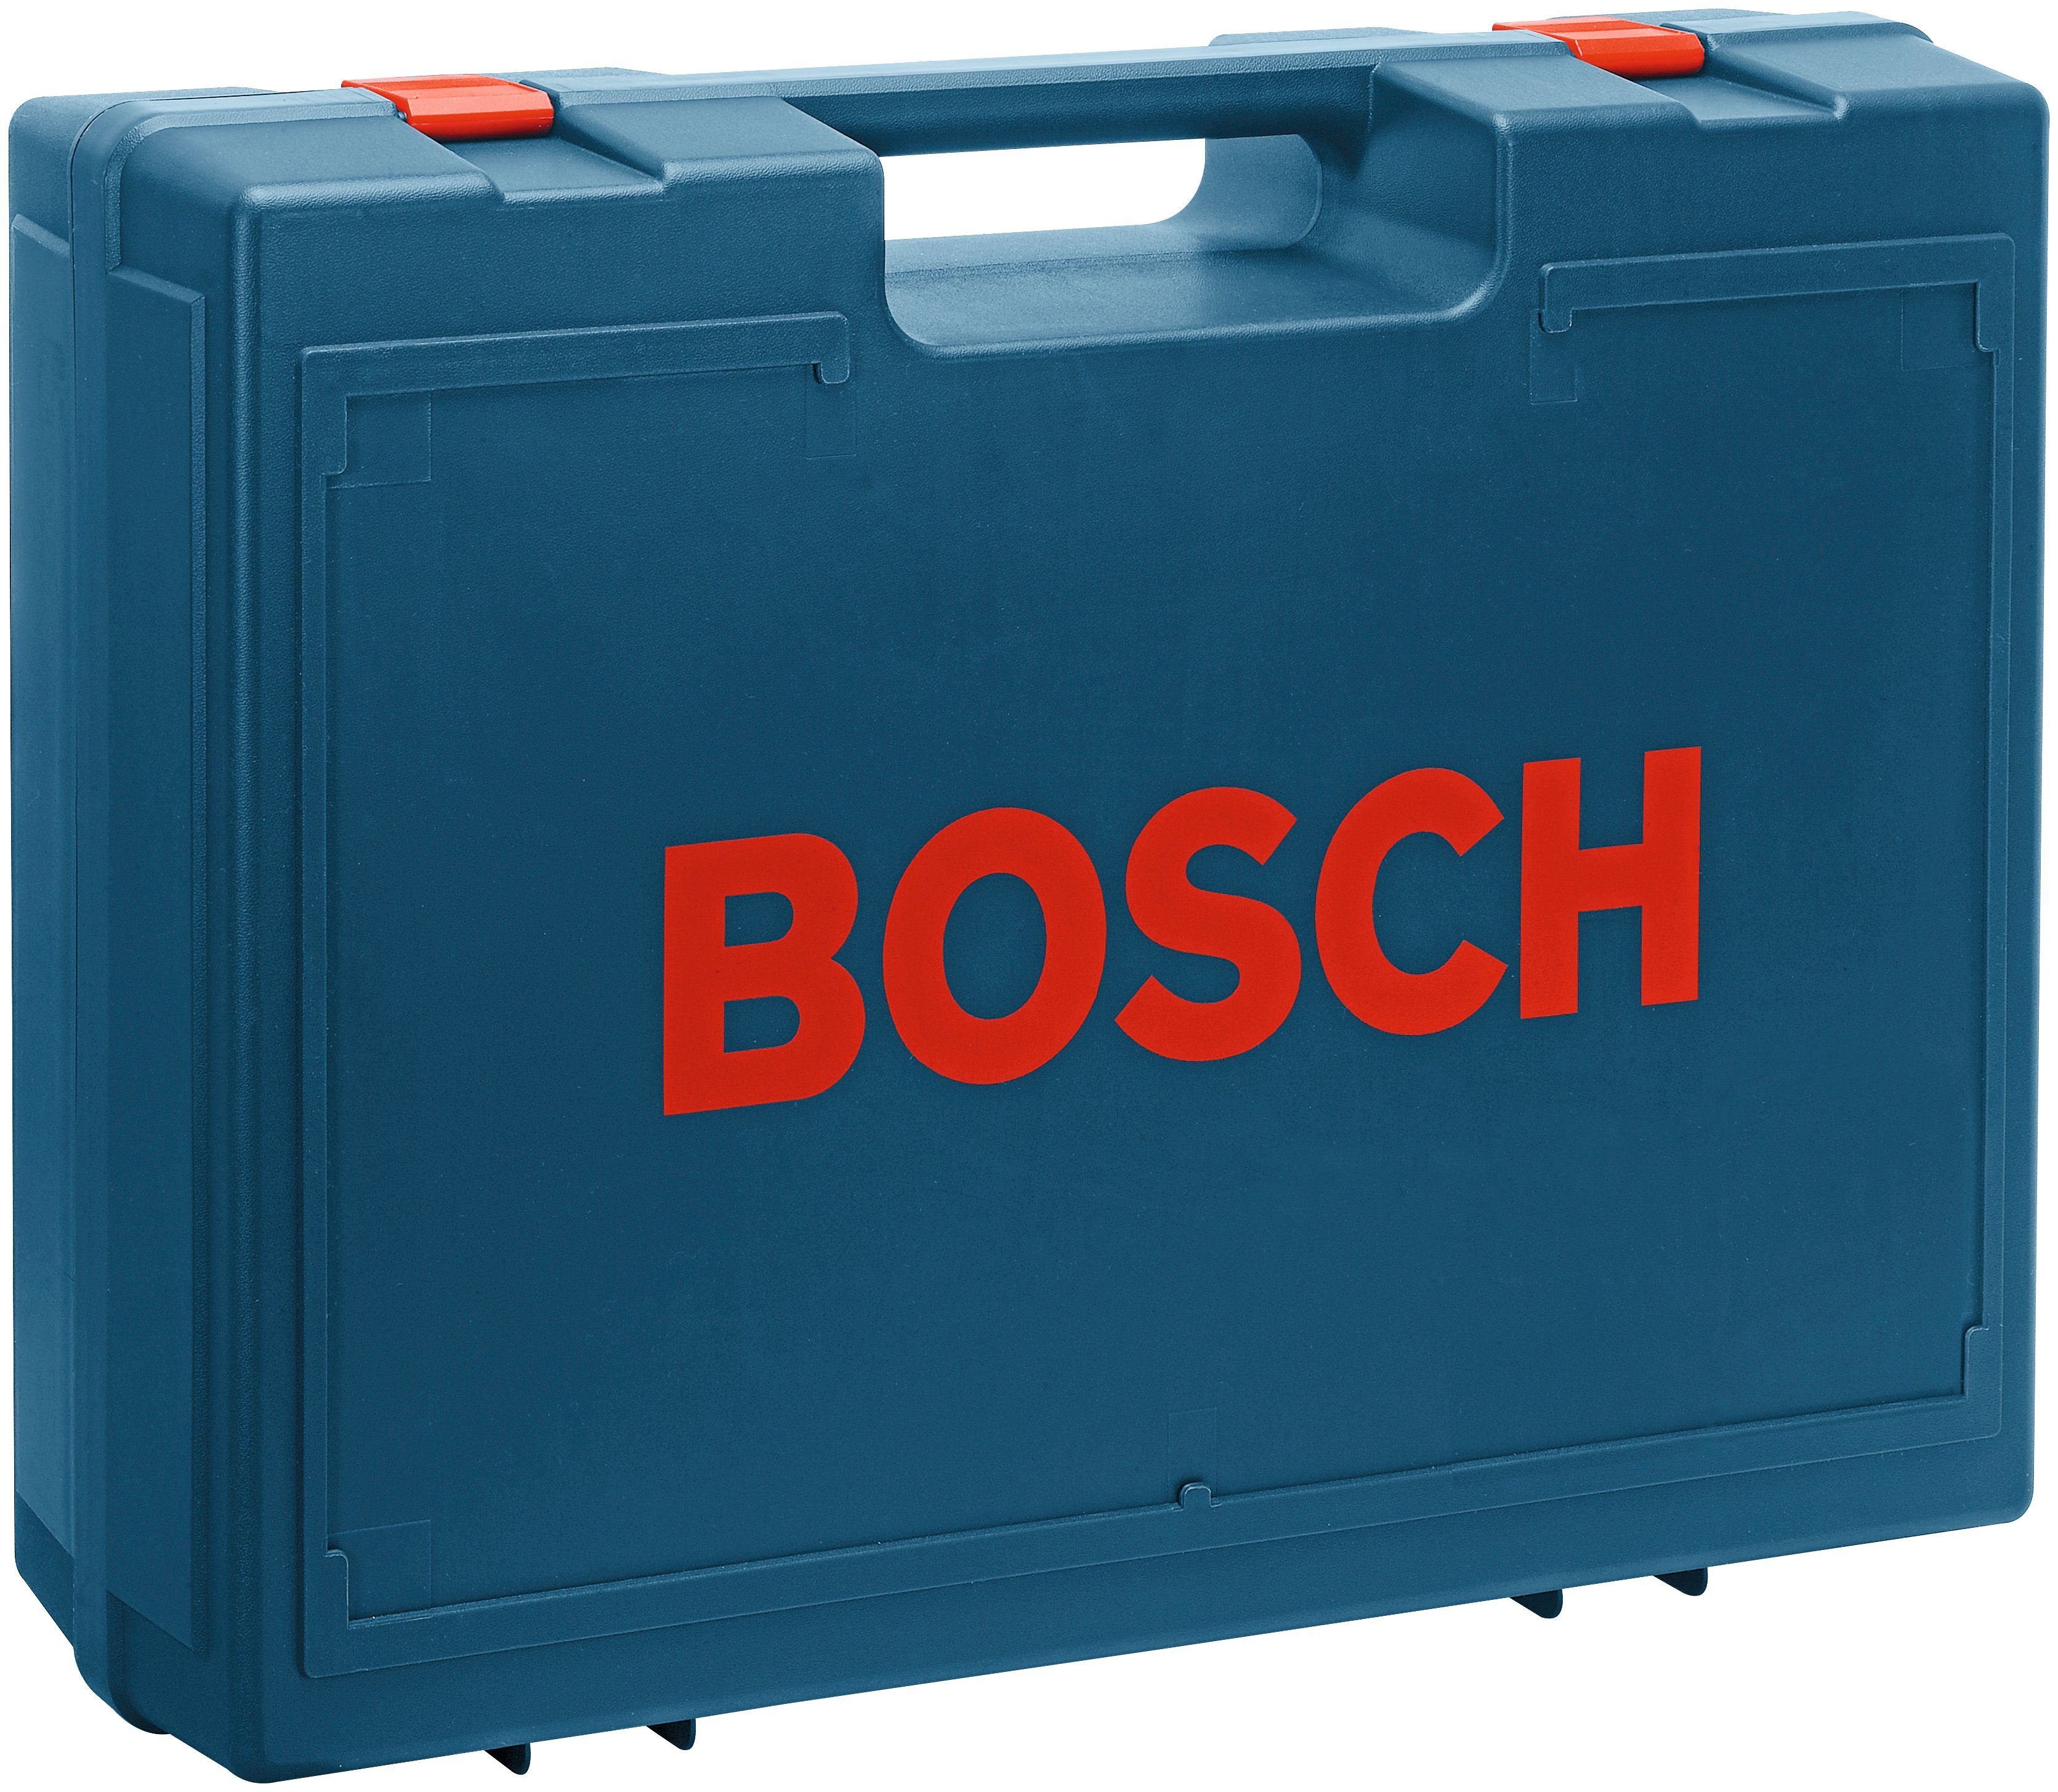 Bosch 125-1 Professional U/min Exzenterschleifer GEX AE, 24000